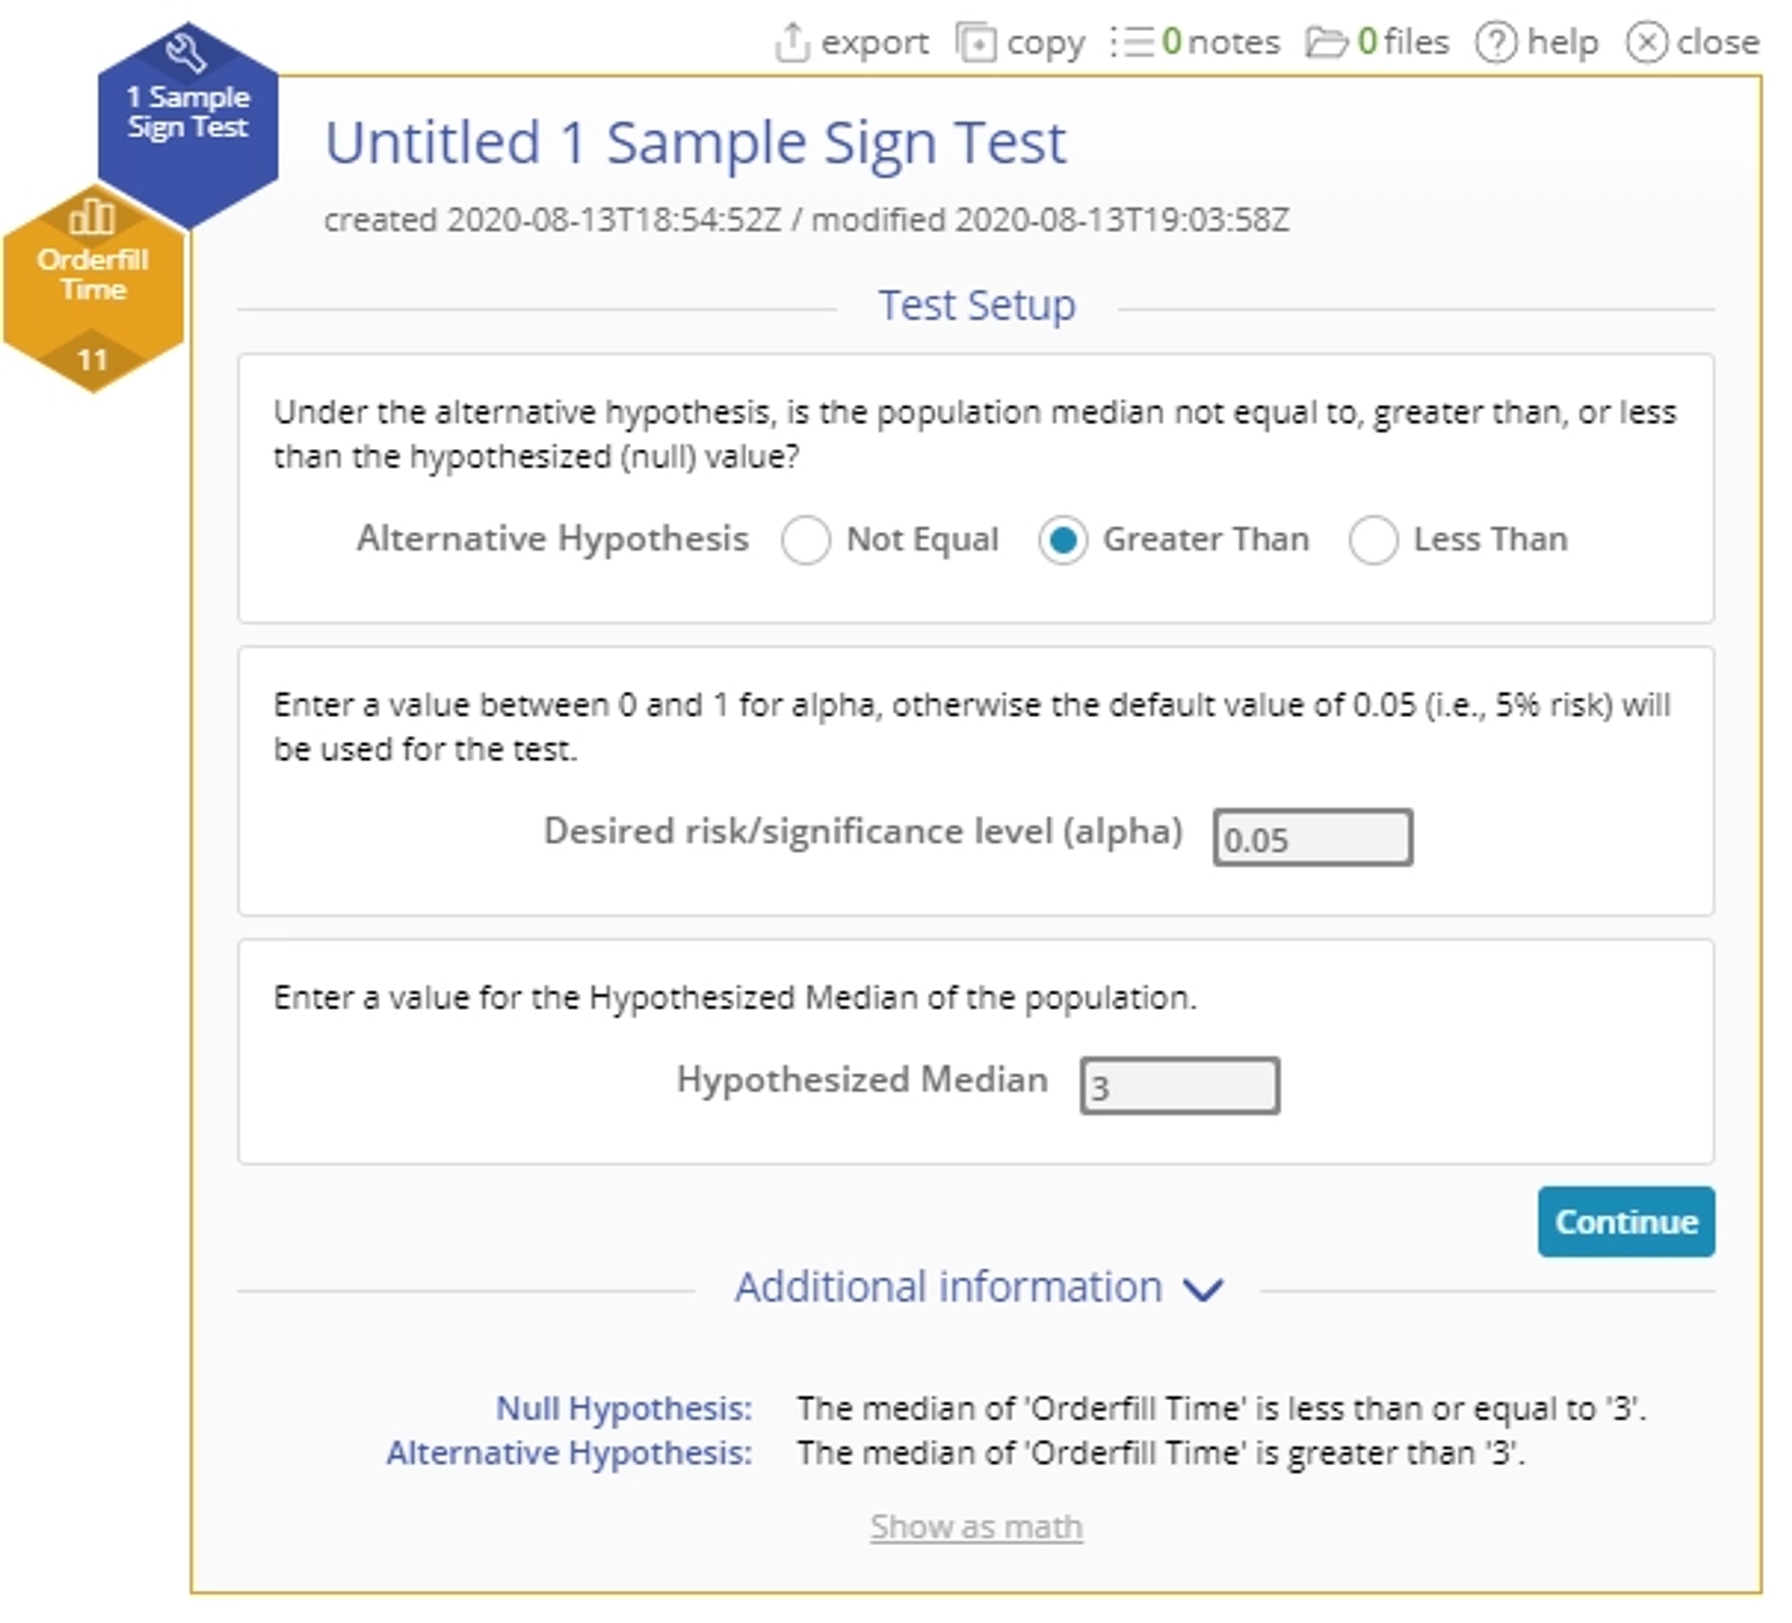 Start up menu for sample sign test.